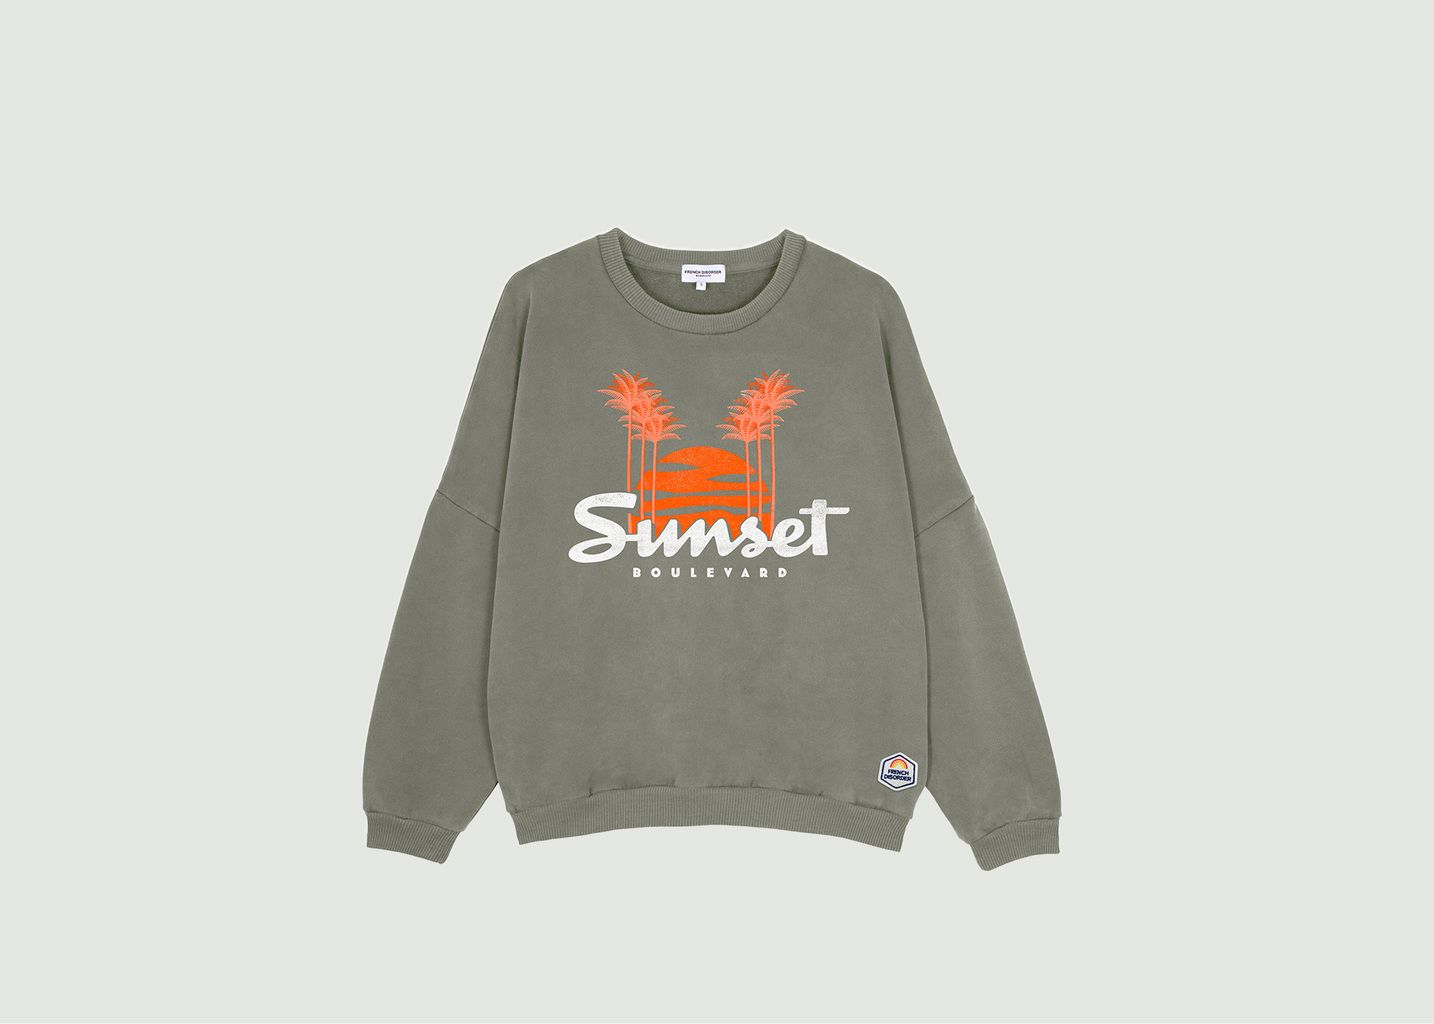 French Disorder Washed Sunset Sweatshirt